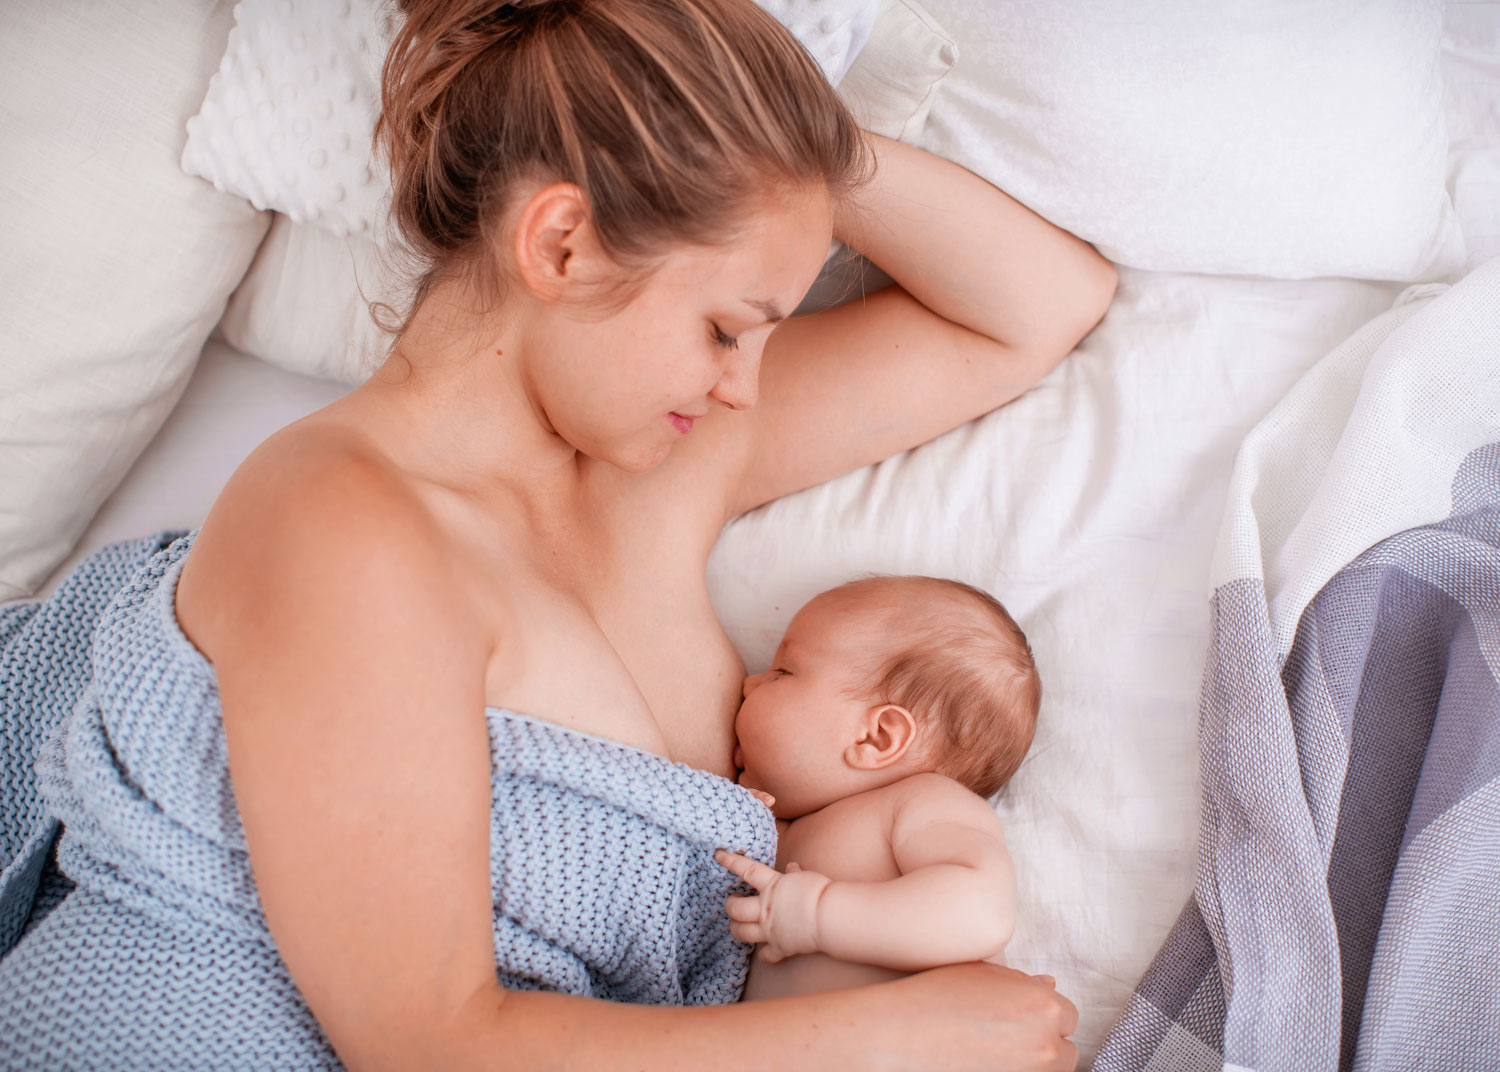 femme allaite son nouveau-né étendue pour diminuer l'engorgement